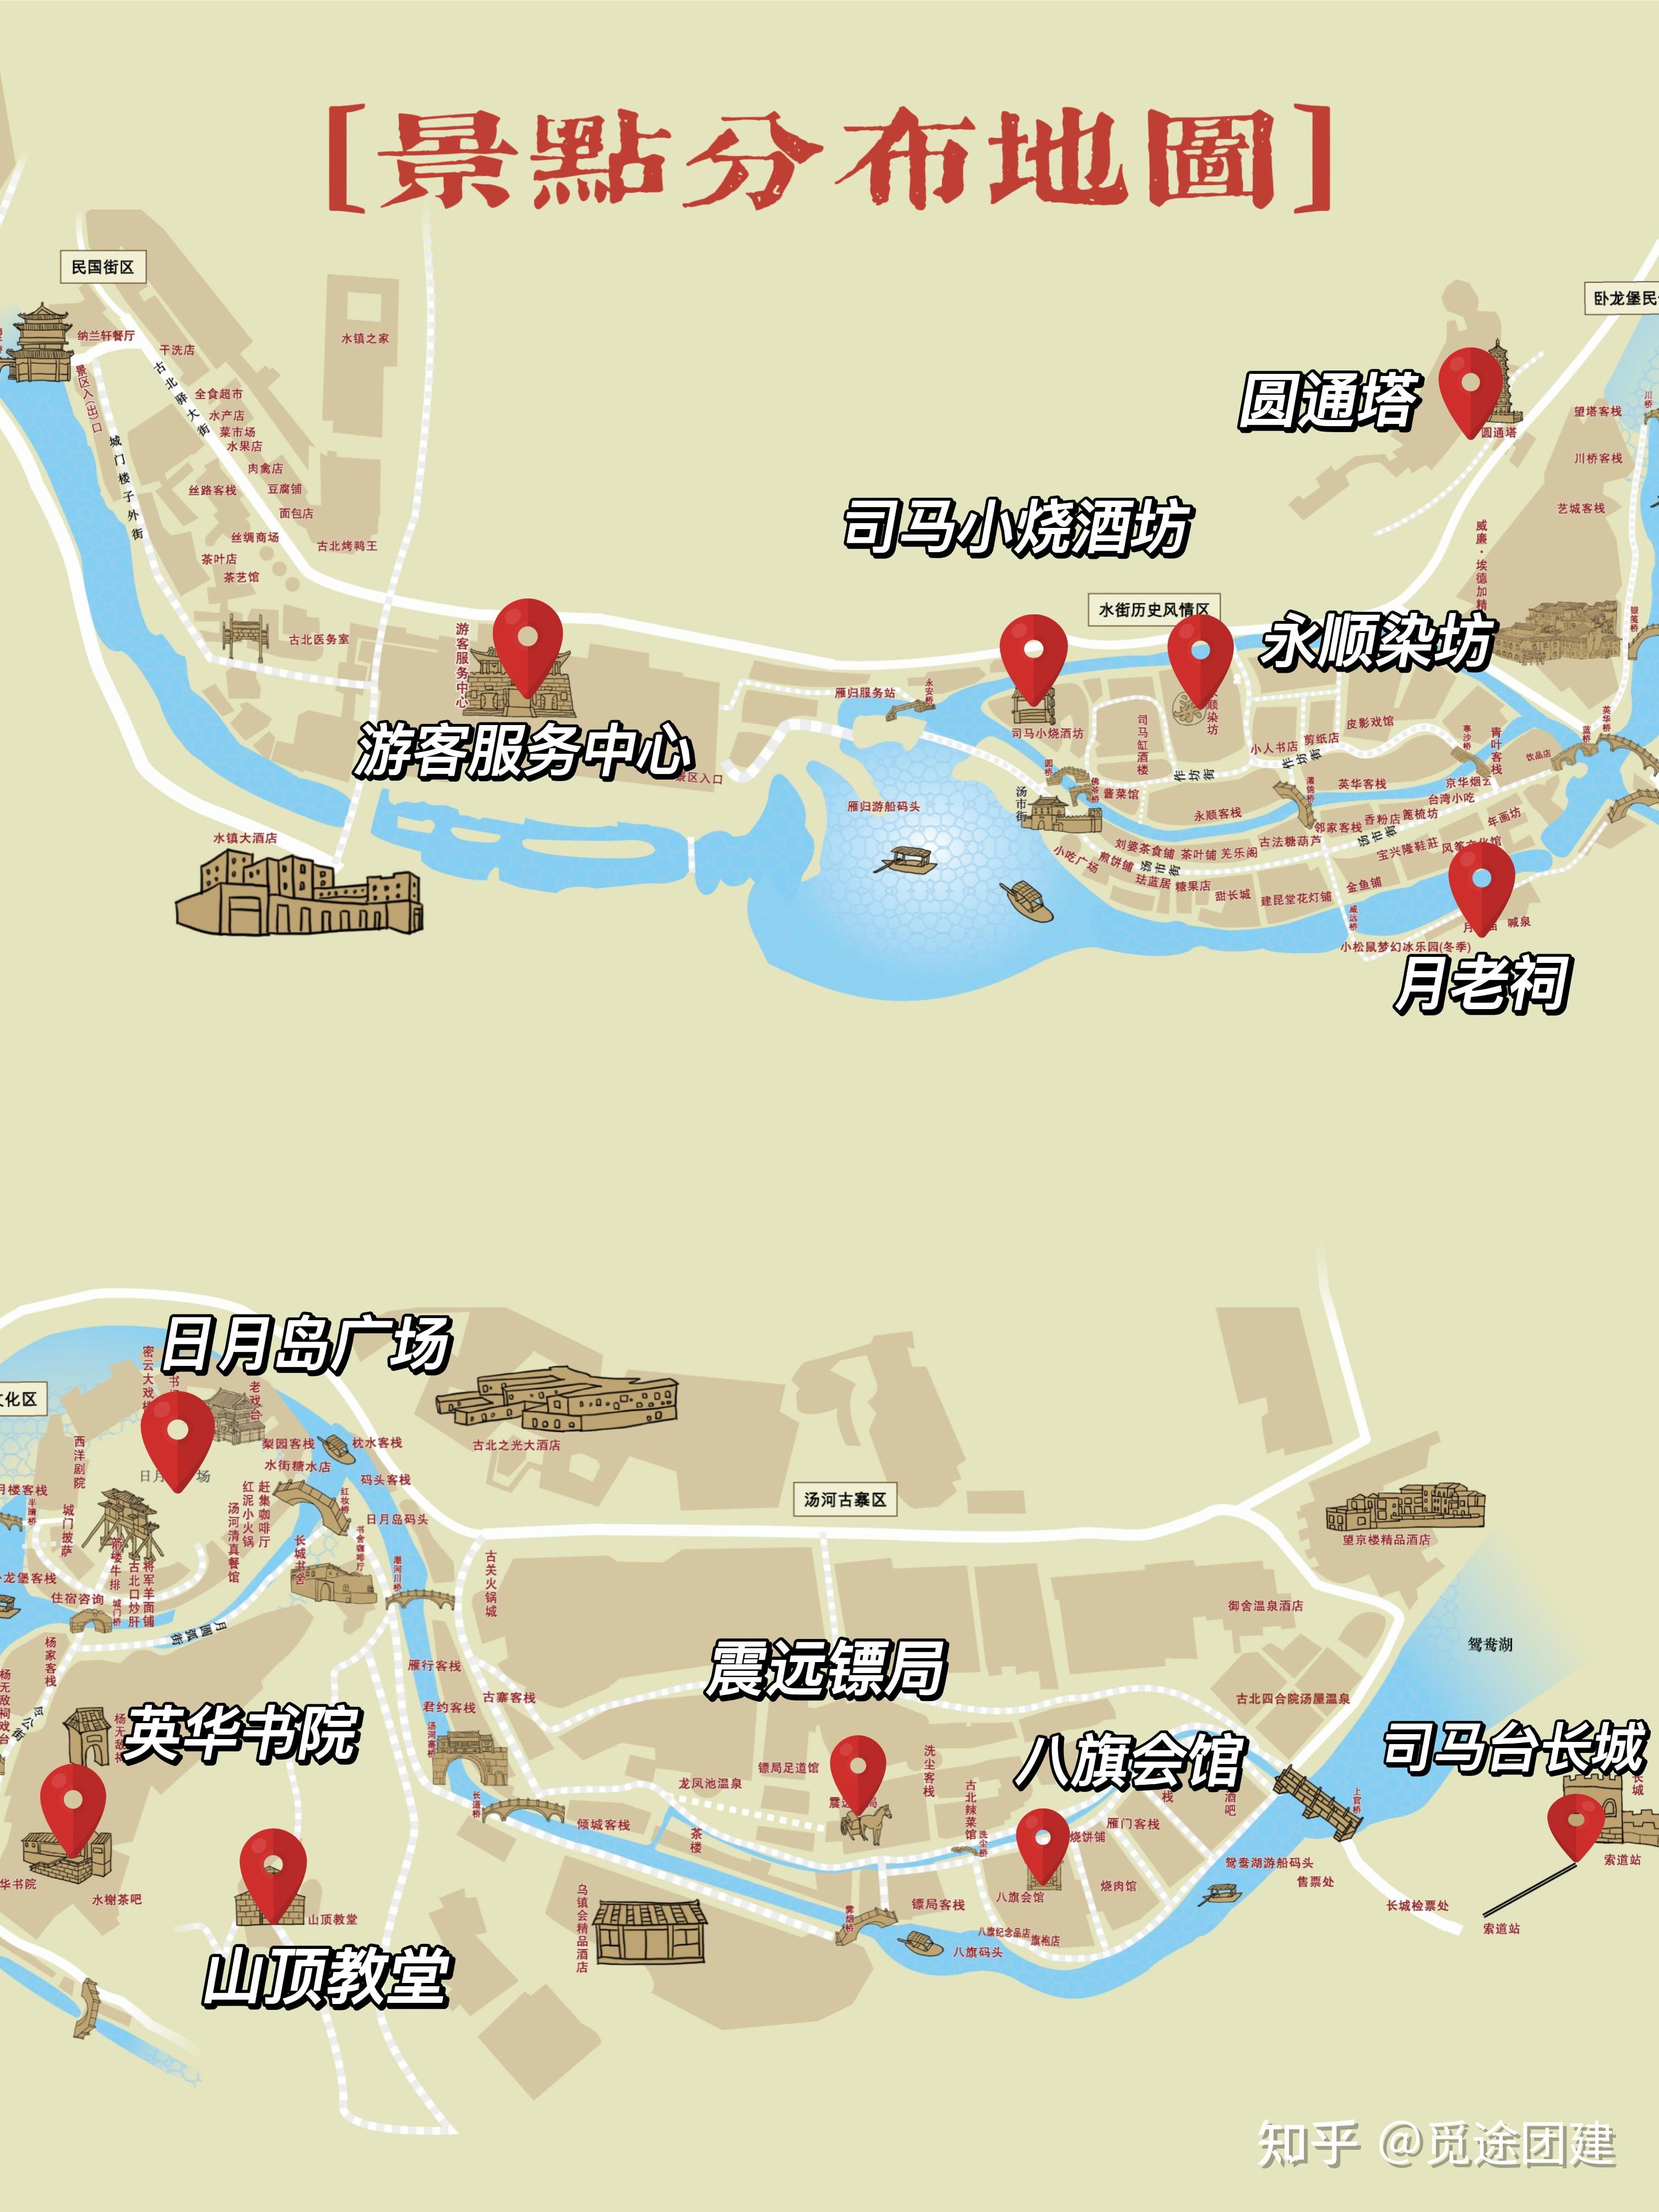 古北水镇景区地图图片